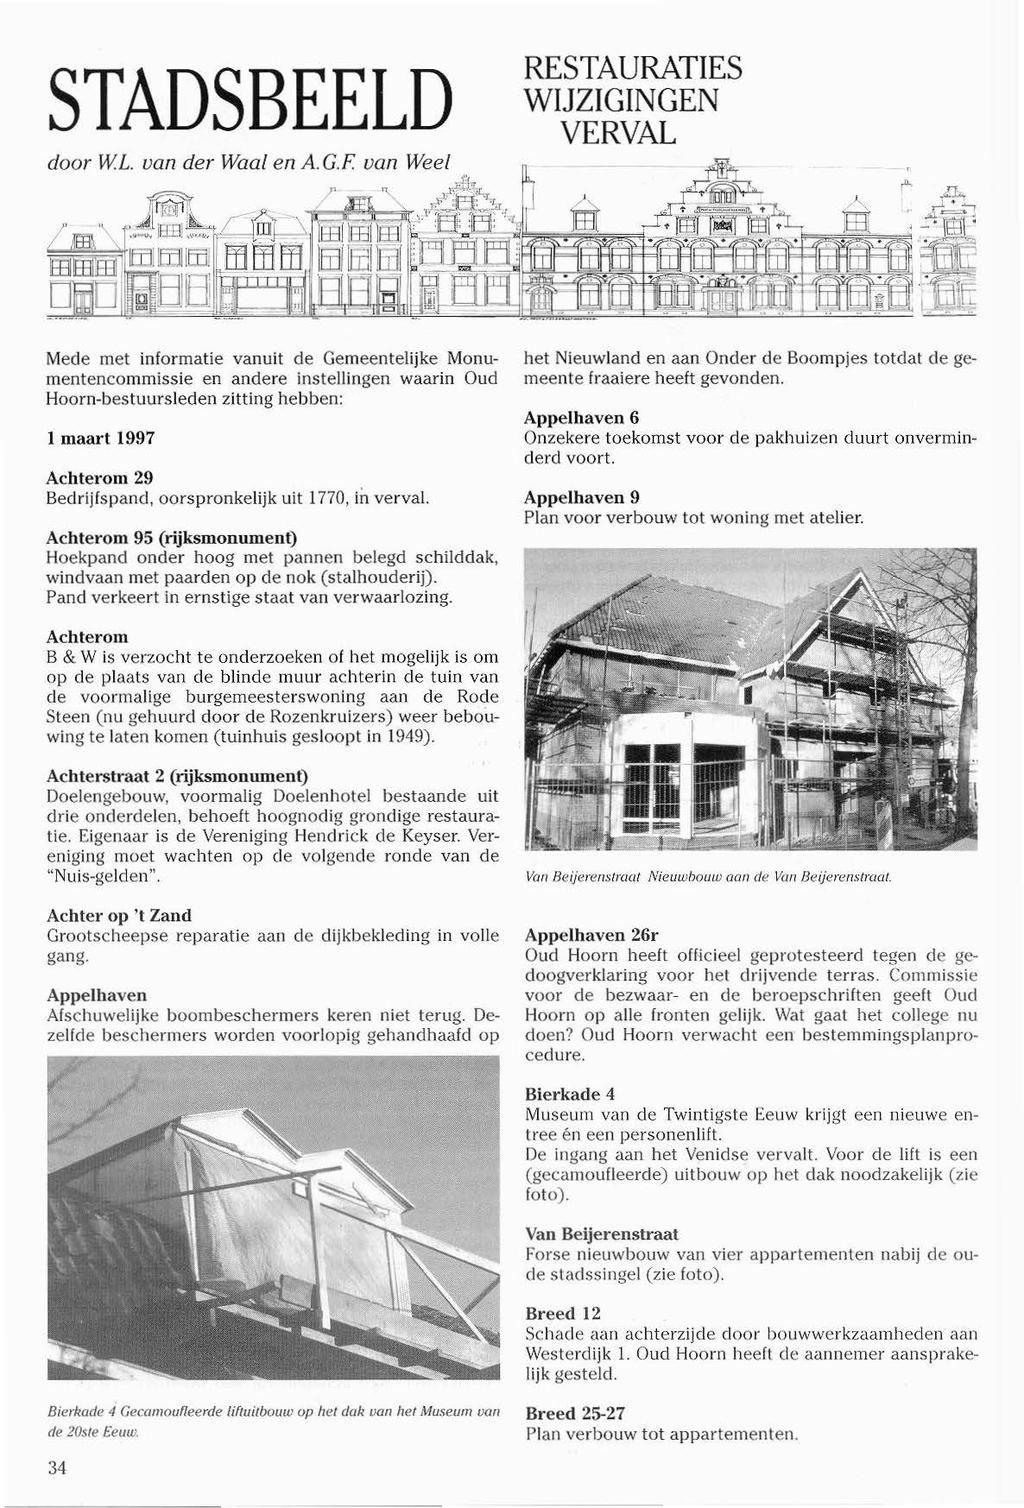 STADSBEELD RESTAURATIES WIJZIGINGEN VERVAL Mede met informatie vanuit de Gemeentelijke Monumentencommissie en andere instellingen waarin Oud Hoorn-bestuursleden zitting hebben: 1 maart 1997 Achterom